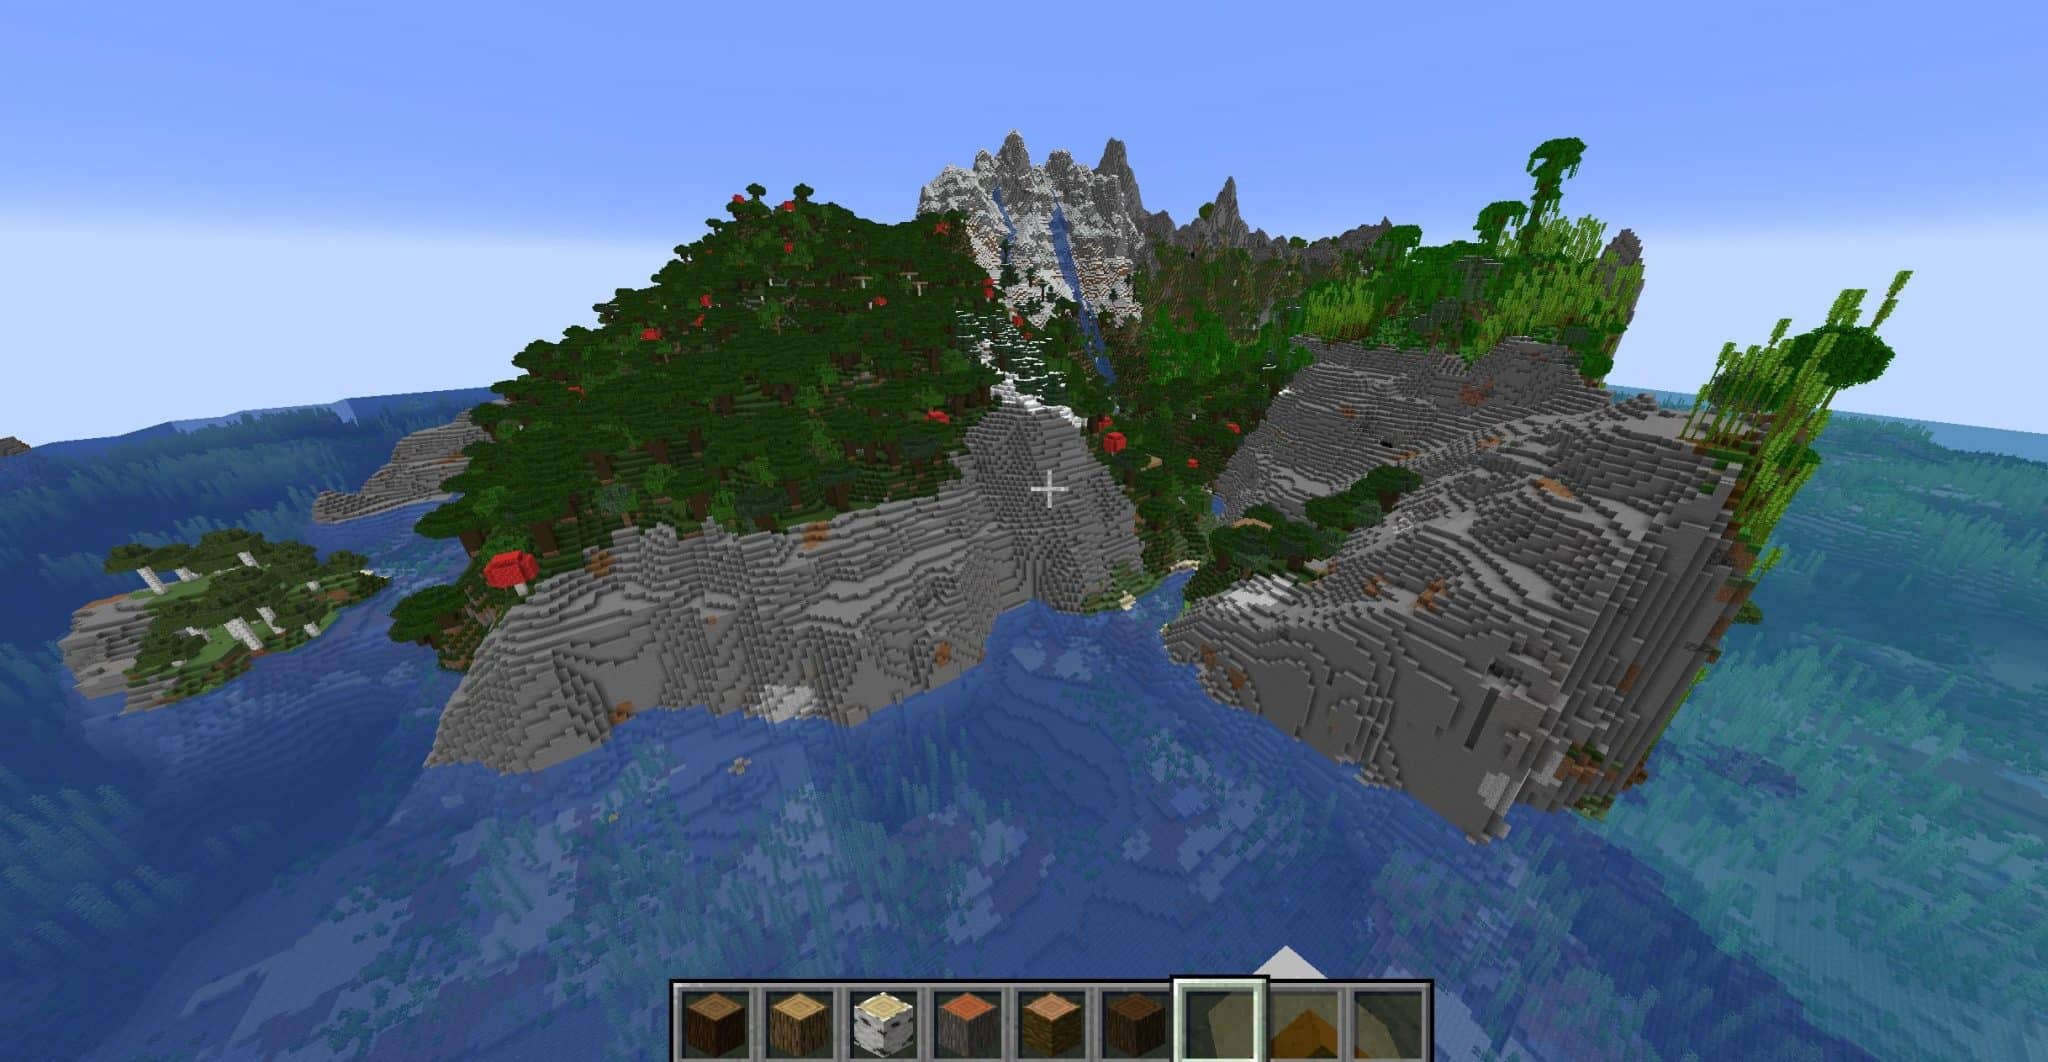 A vast Mountain Island in Minecraft